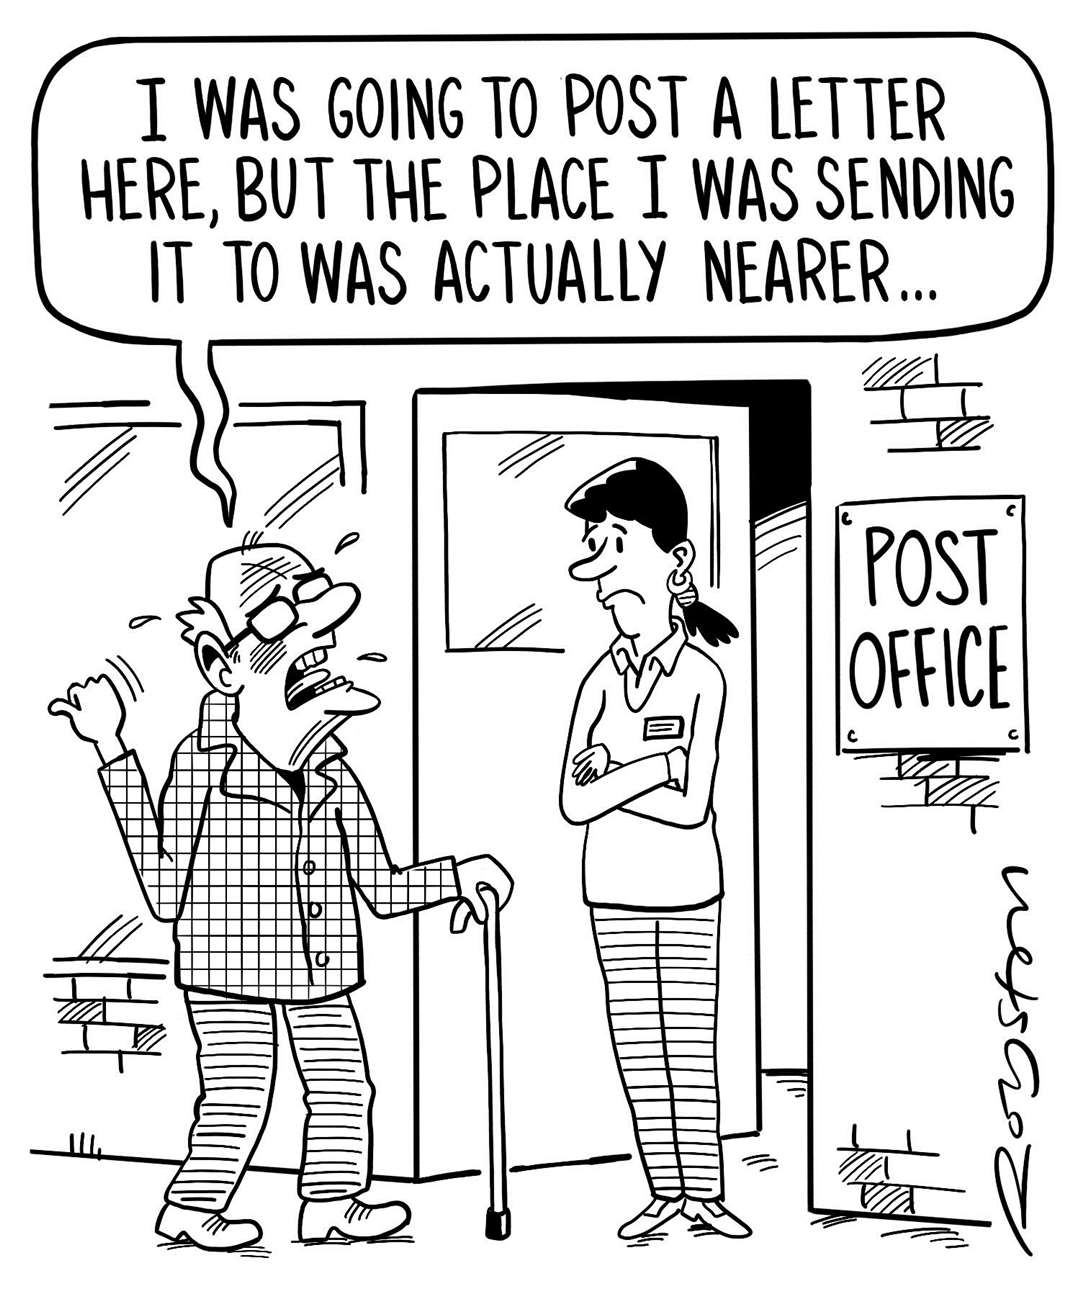 Post office cartoon by Royston Robertson